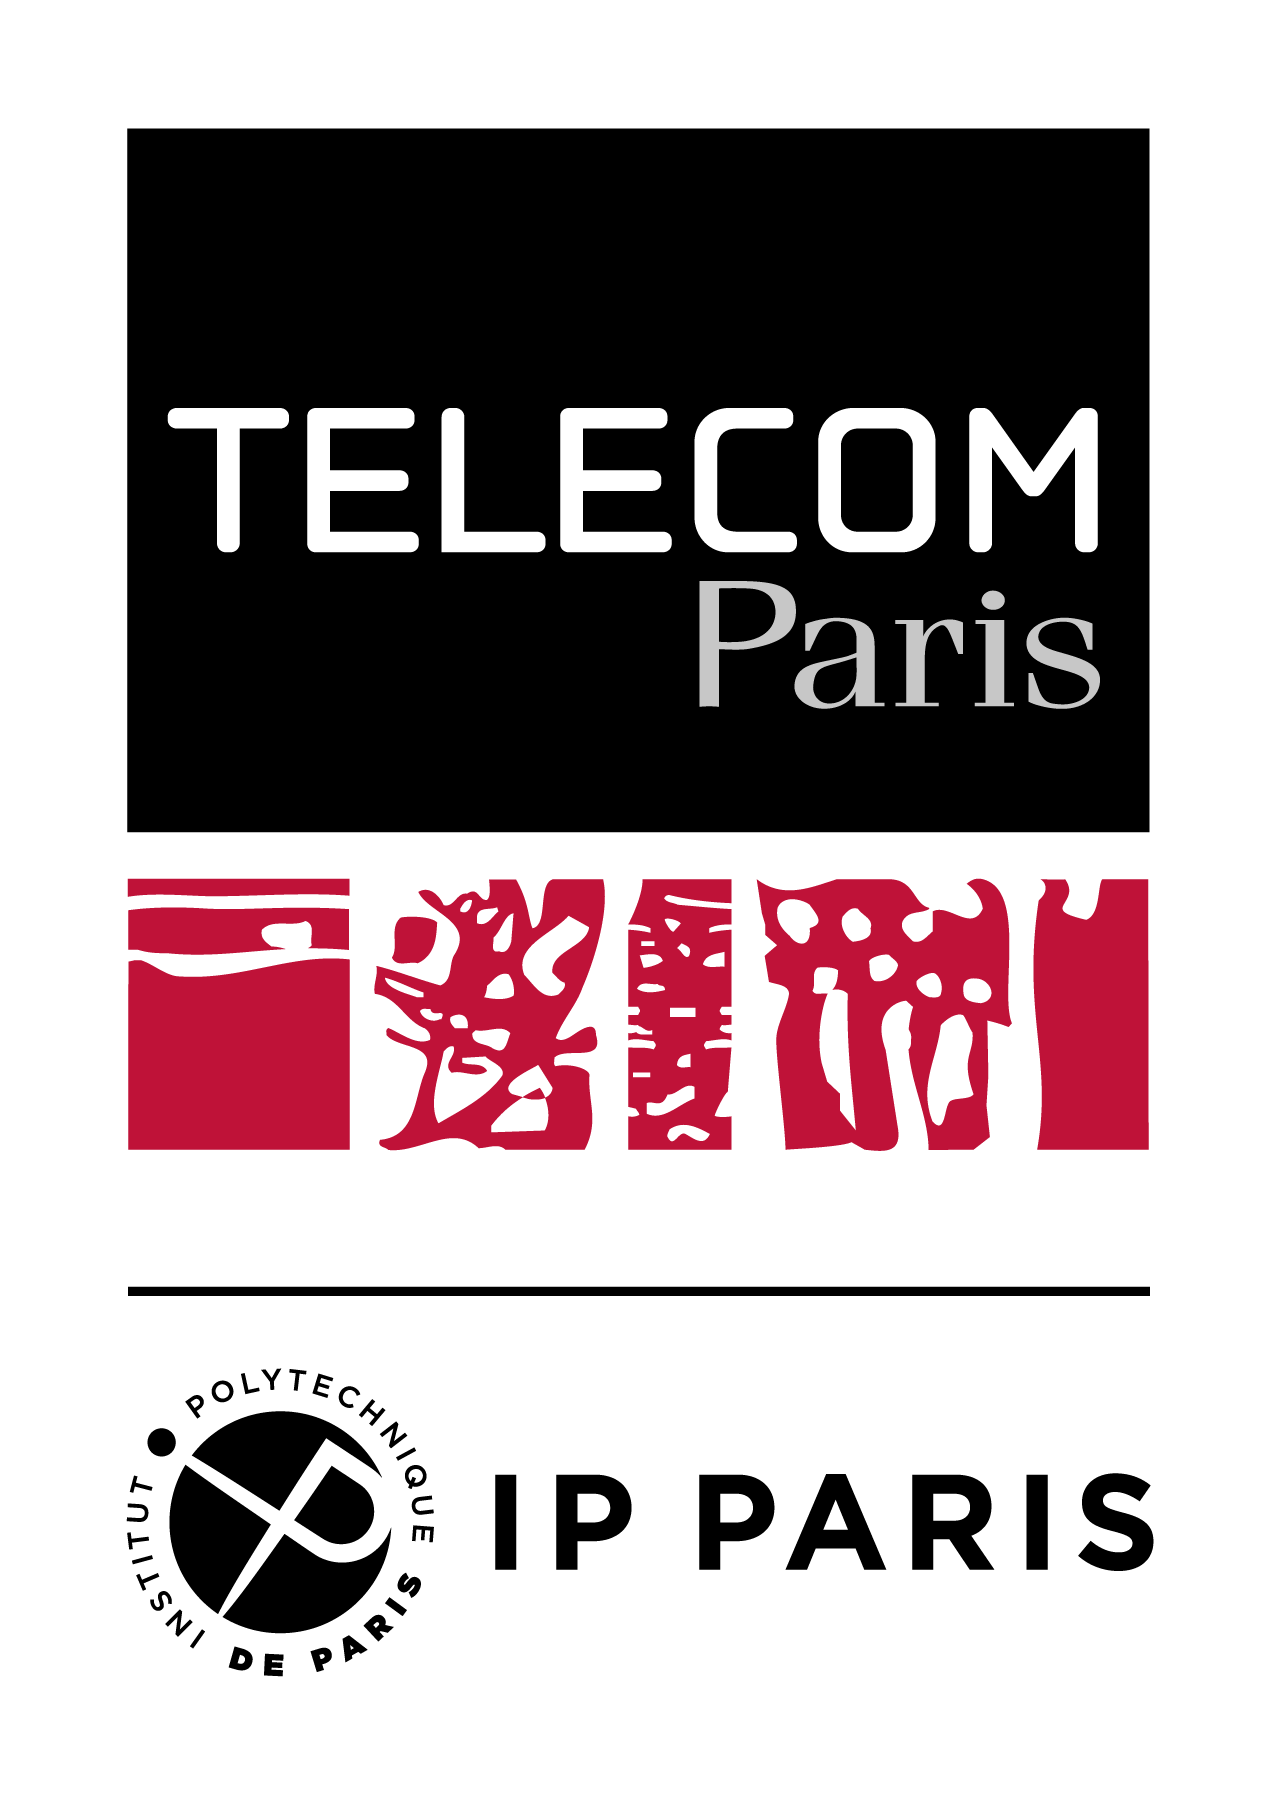 TELECOM Paris